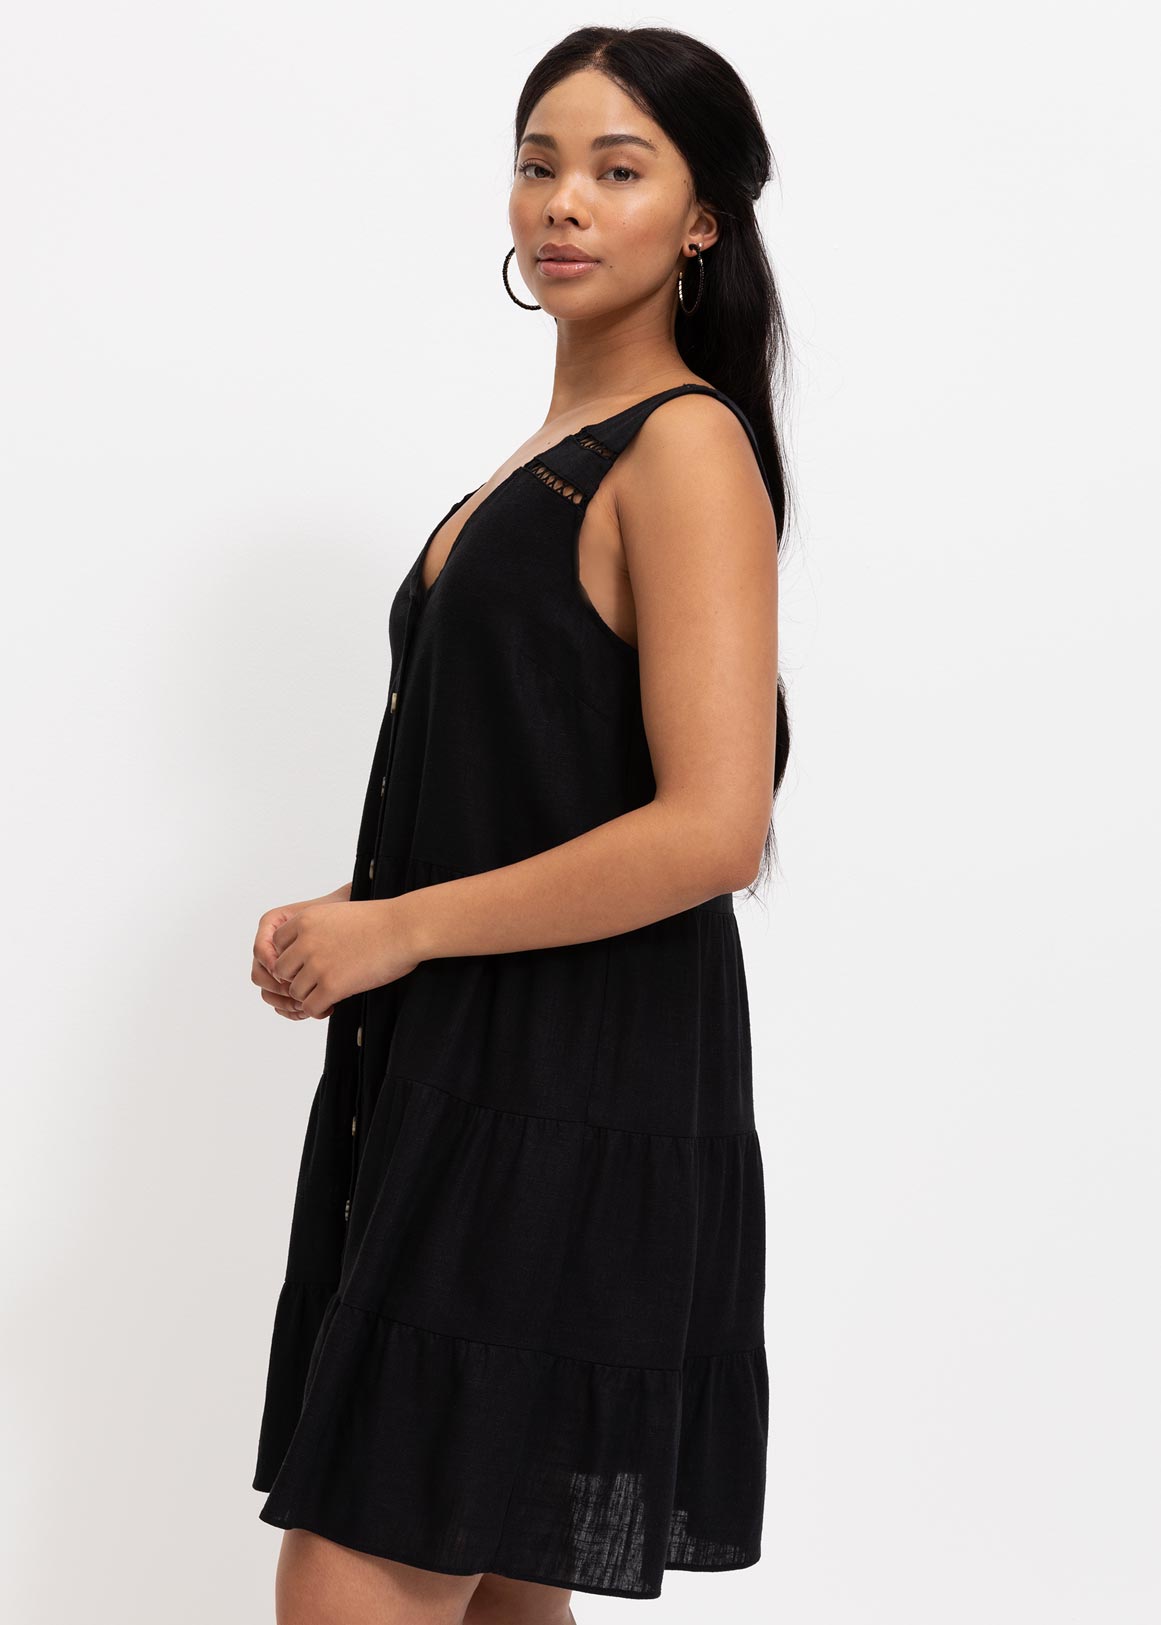 Black Dress Woolworths | vlr.eng.br